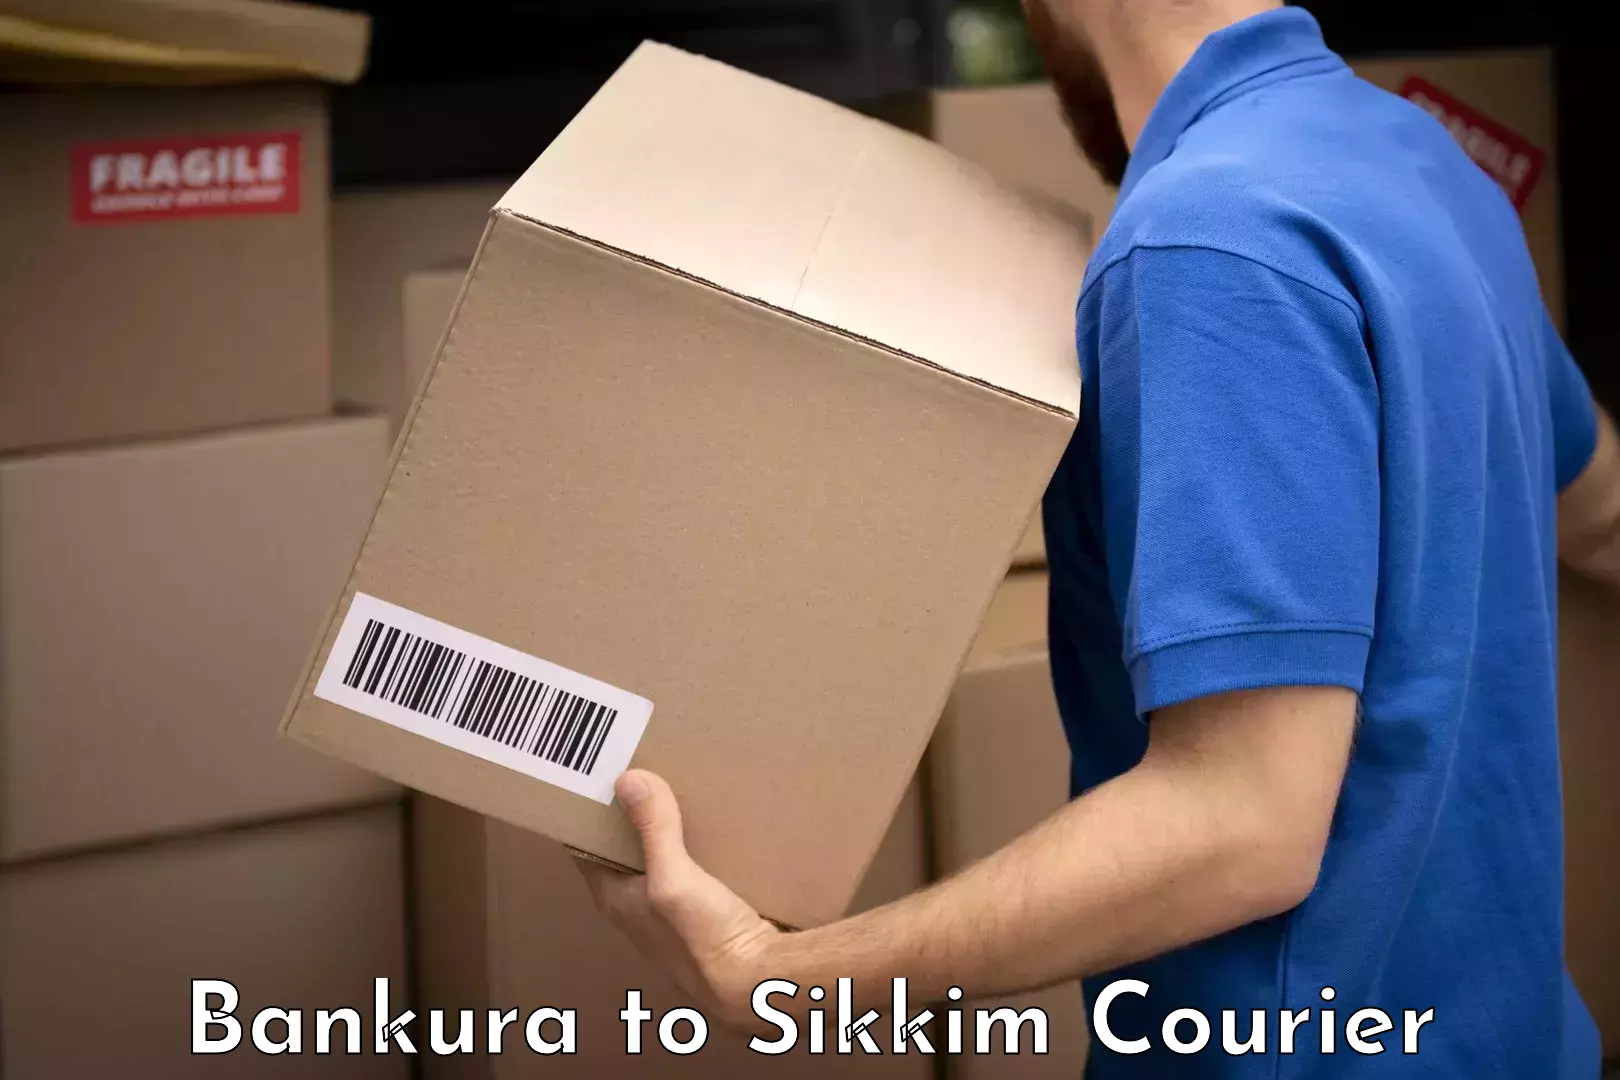 Luggage transit service Bankura to Sikkim